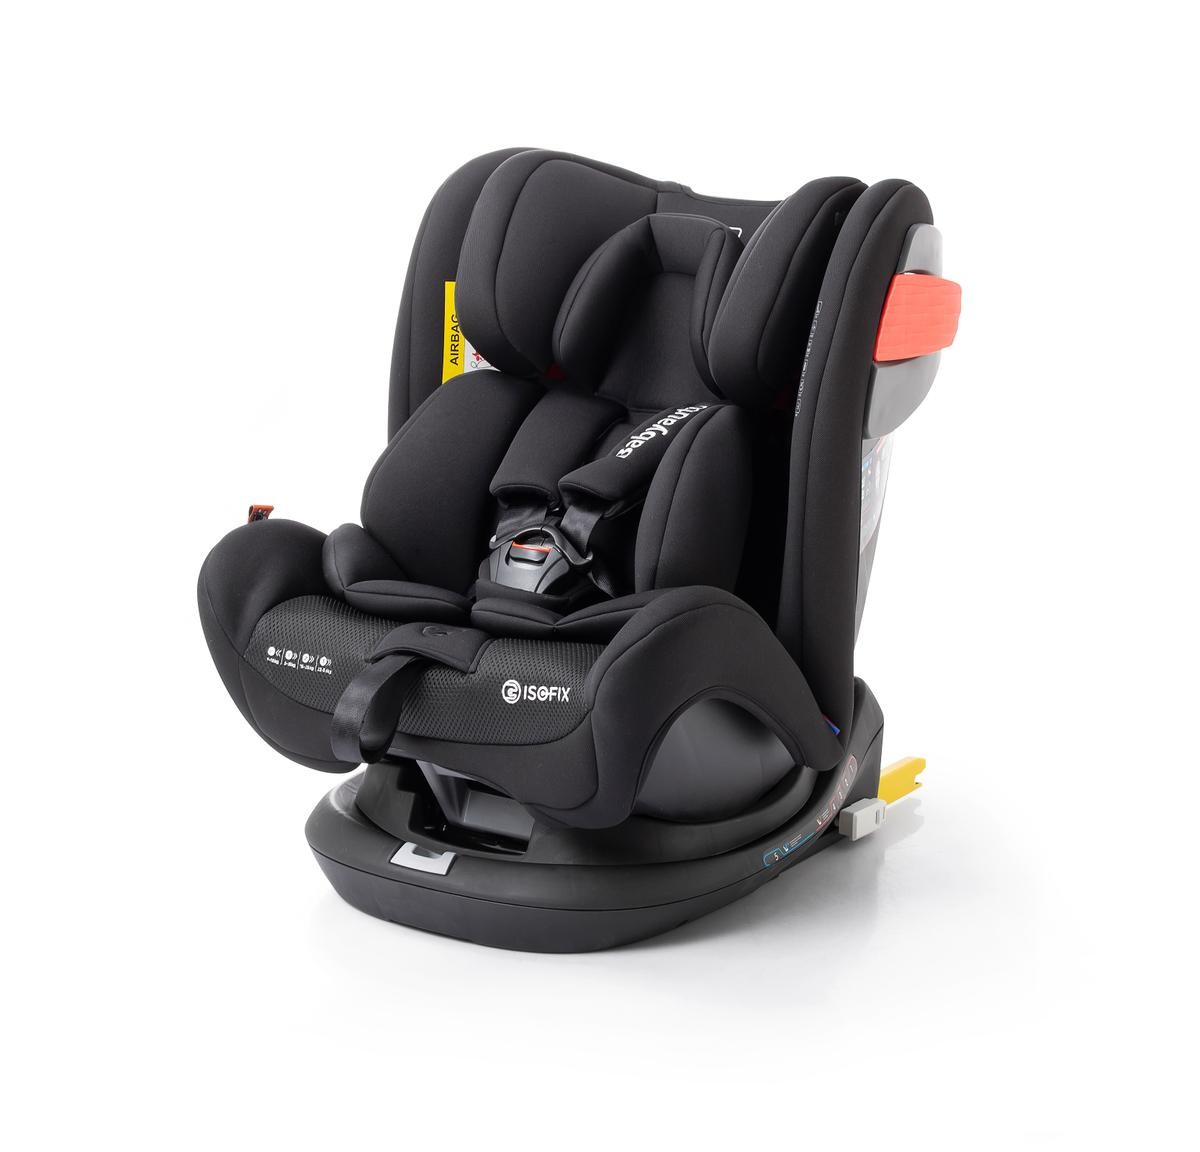 8435593700013 Babyauto Kindersitz mit Isofix, Gruppe 0+ / 1 / 2